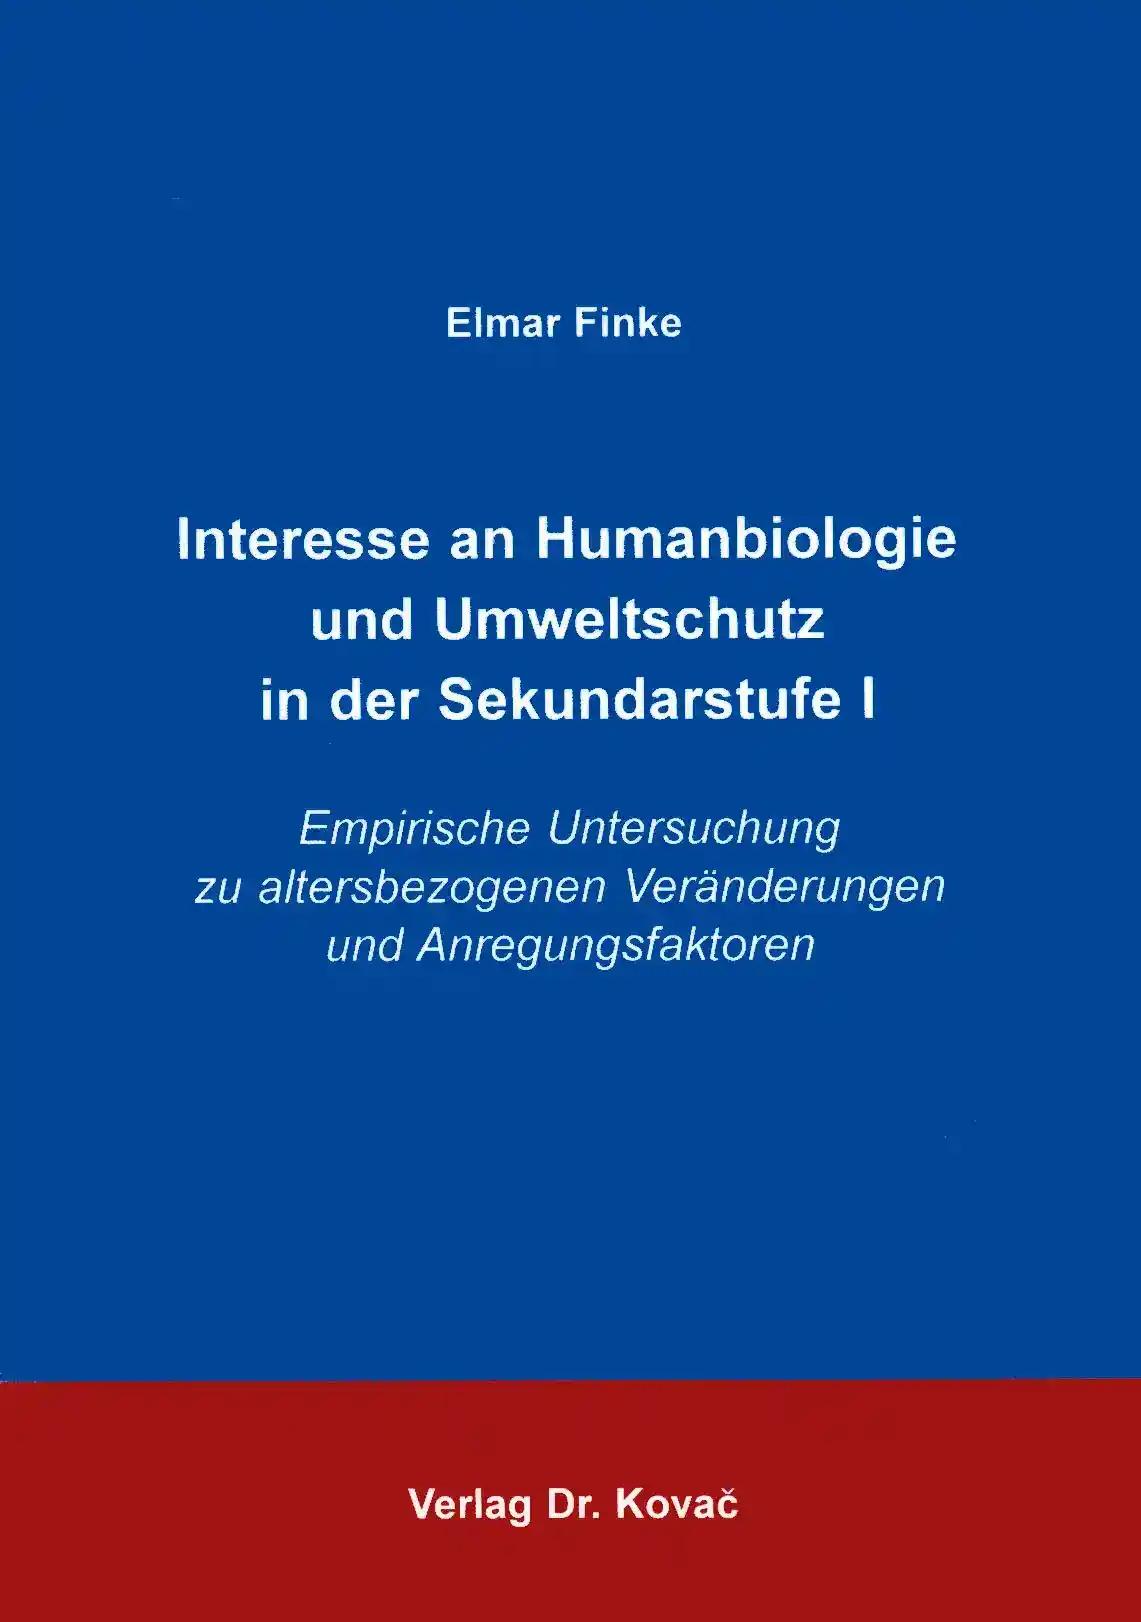 Interesse an Humanbiologie und Umweltschutz in der Sekundarstufe I, Empirische Untersuchung zu altersbezogenen VerÃ¤nderungen und Anregungsfaktoren - Elmar Finke